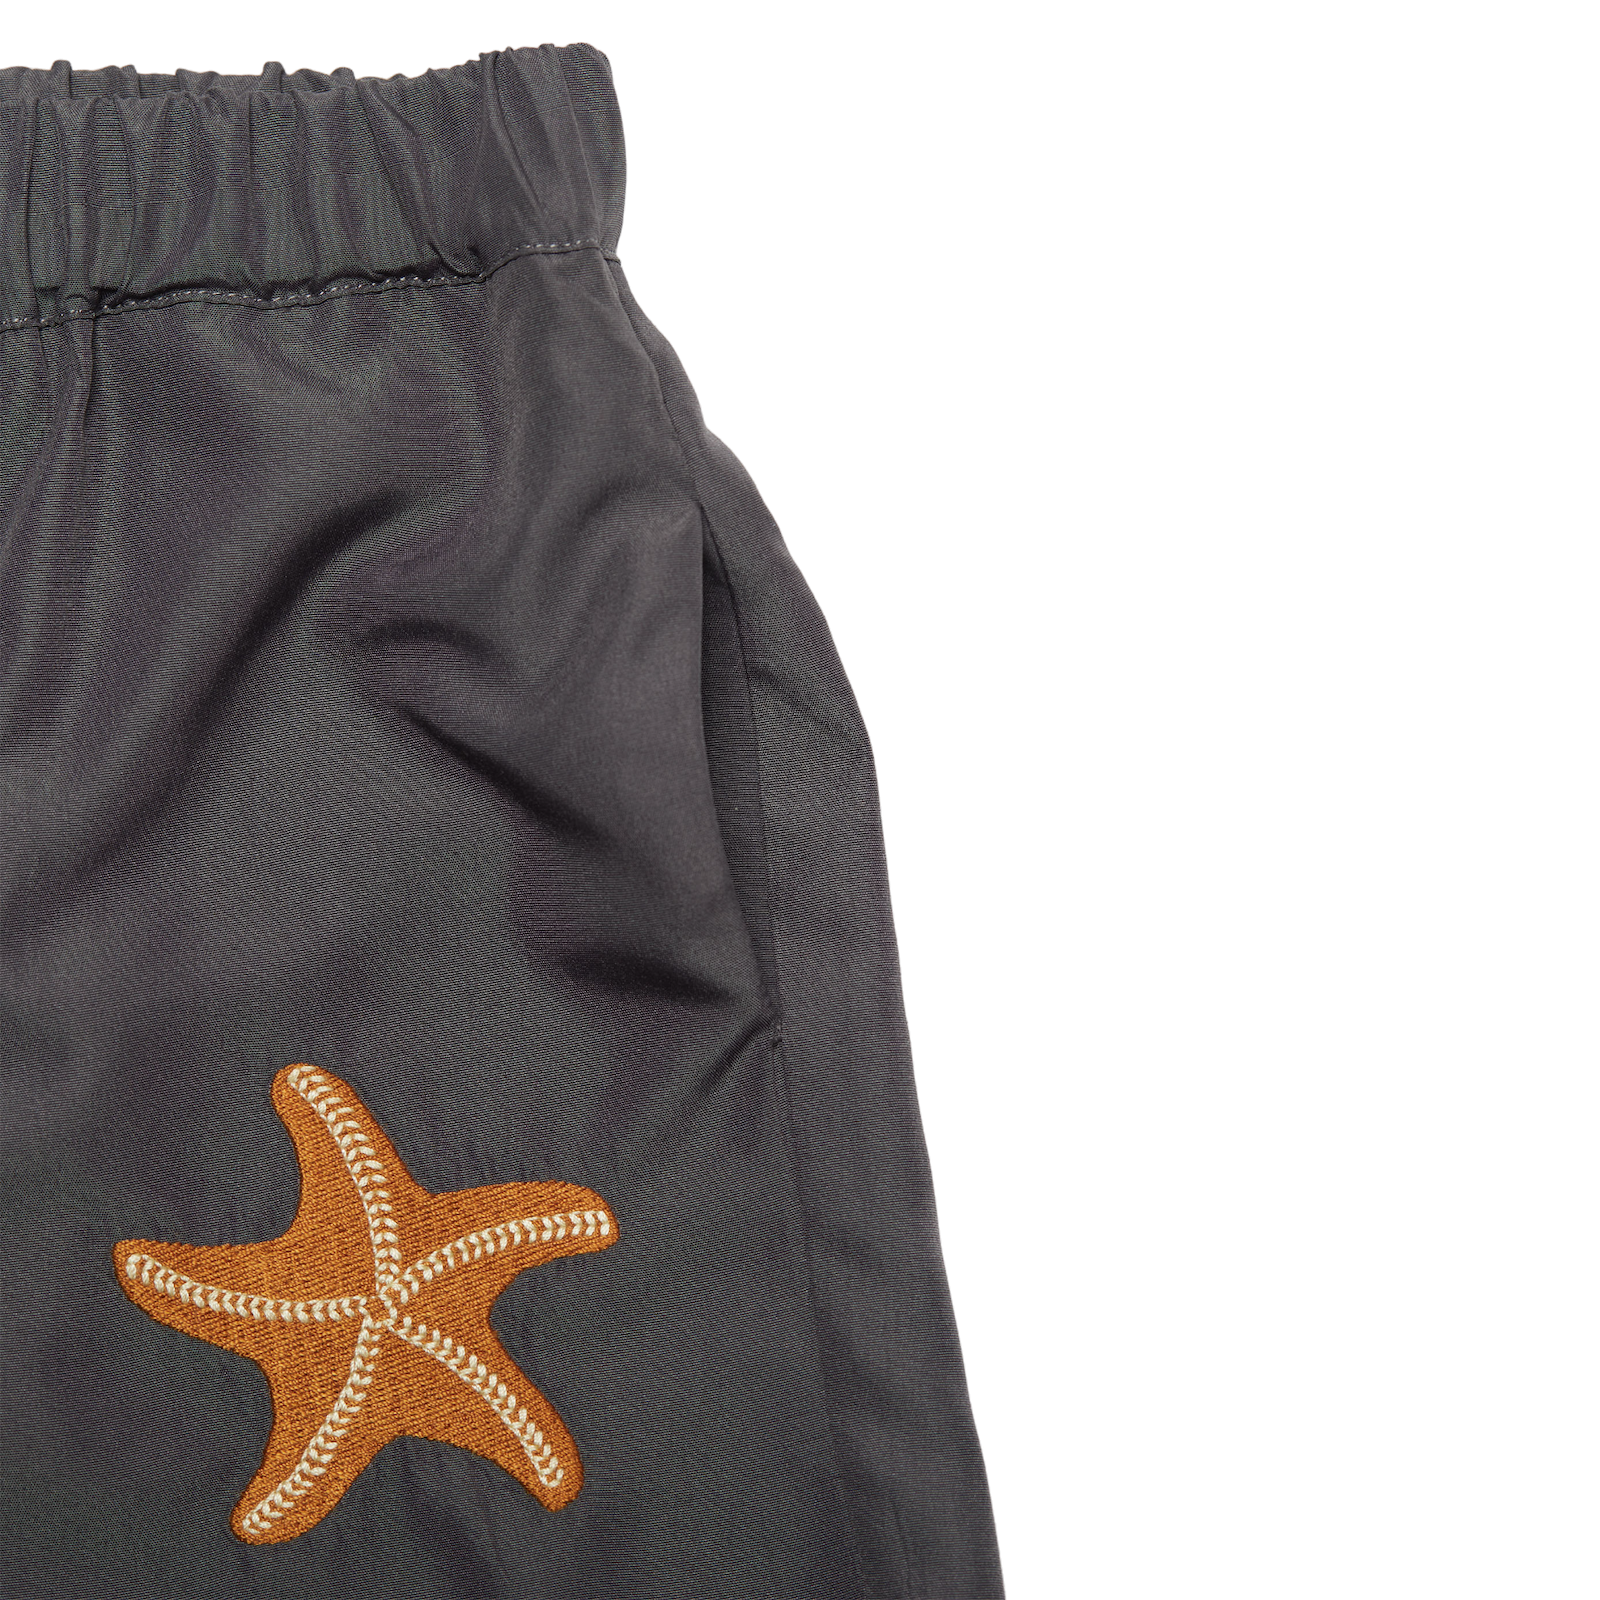 Seba Swim Shorts | Starfish | Grey